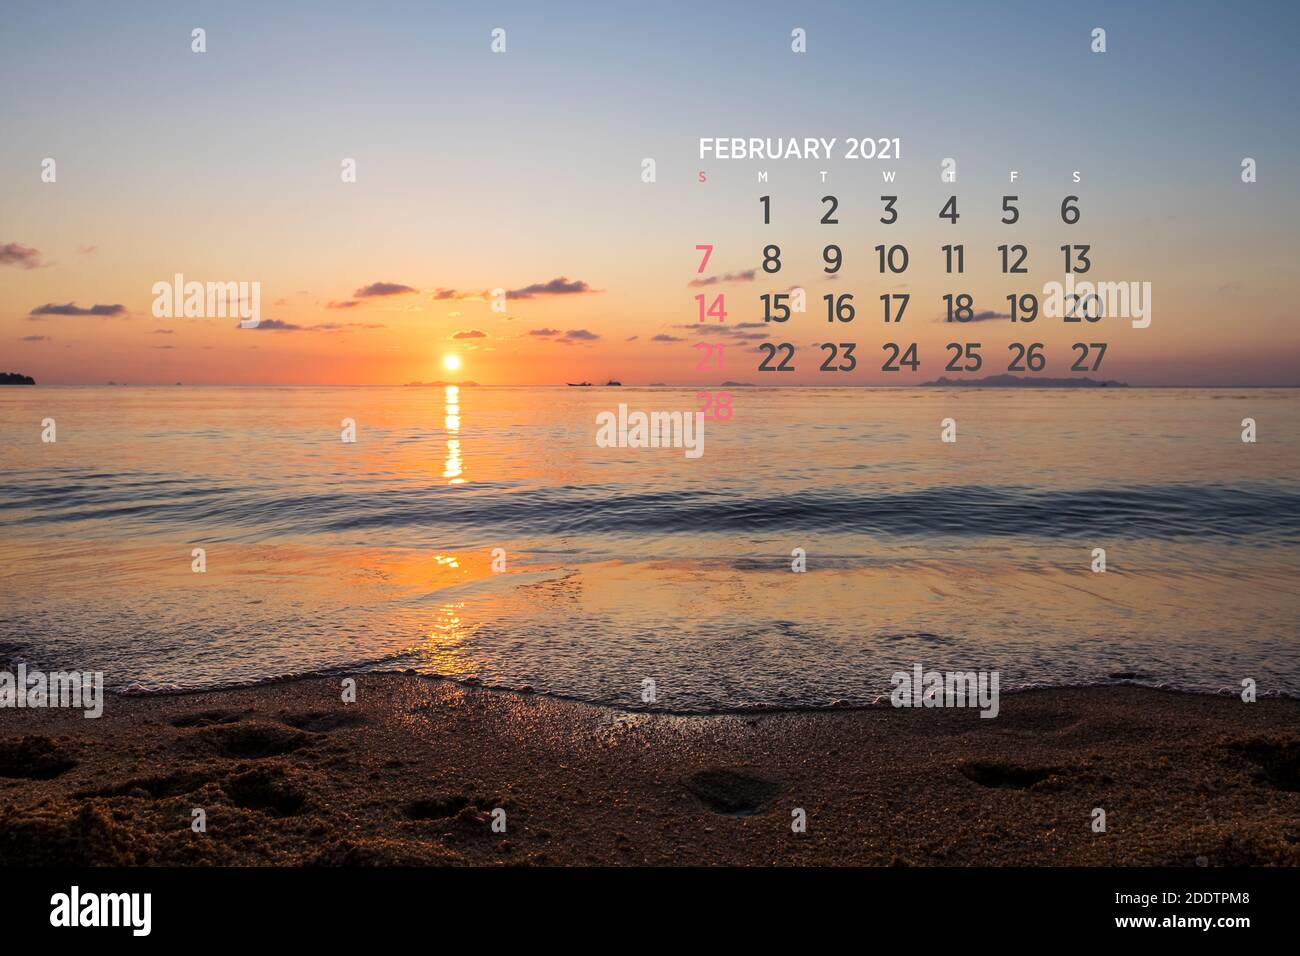 Calendar February 2021. Sea, ocean, beach, tropical, nature theme. A2. 60 x 40 cm. 15.75 x 23.62 inches Stock Photo